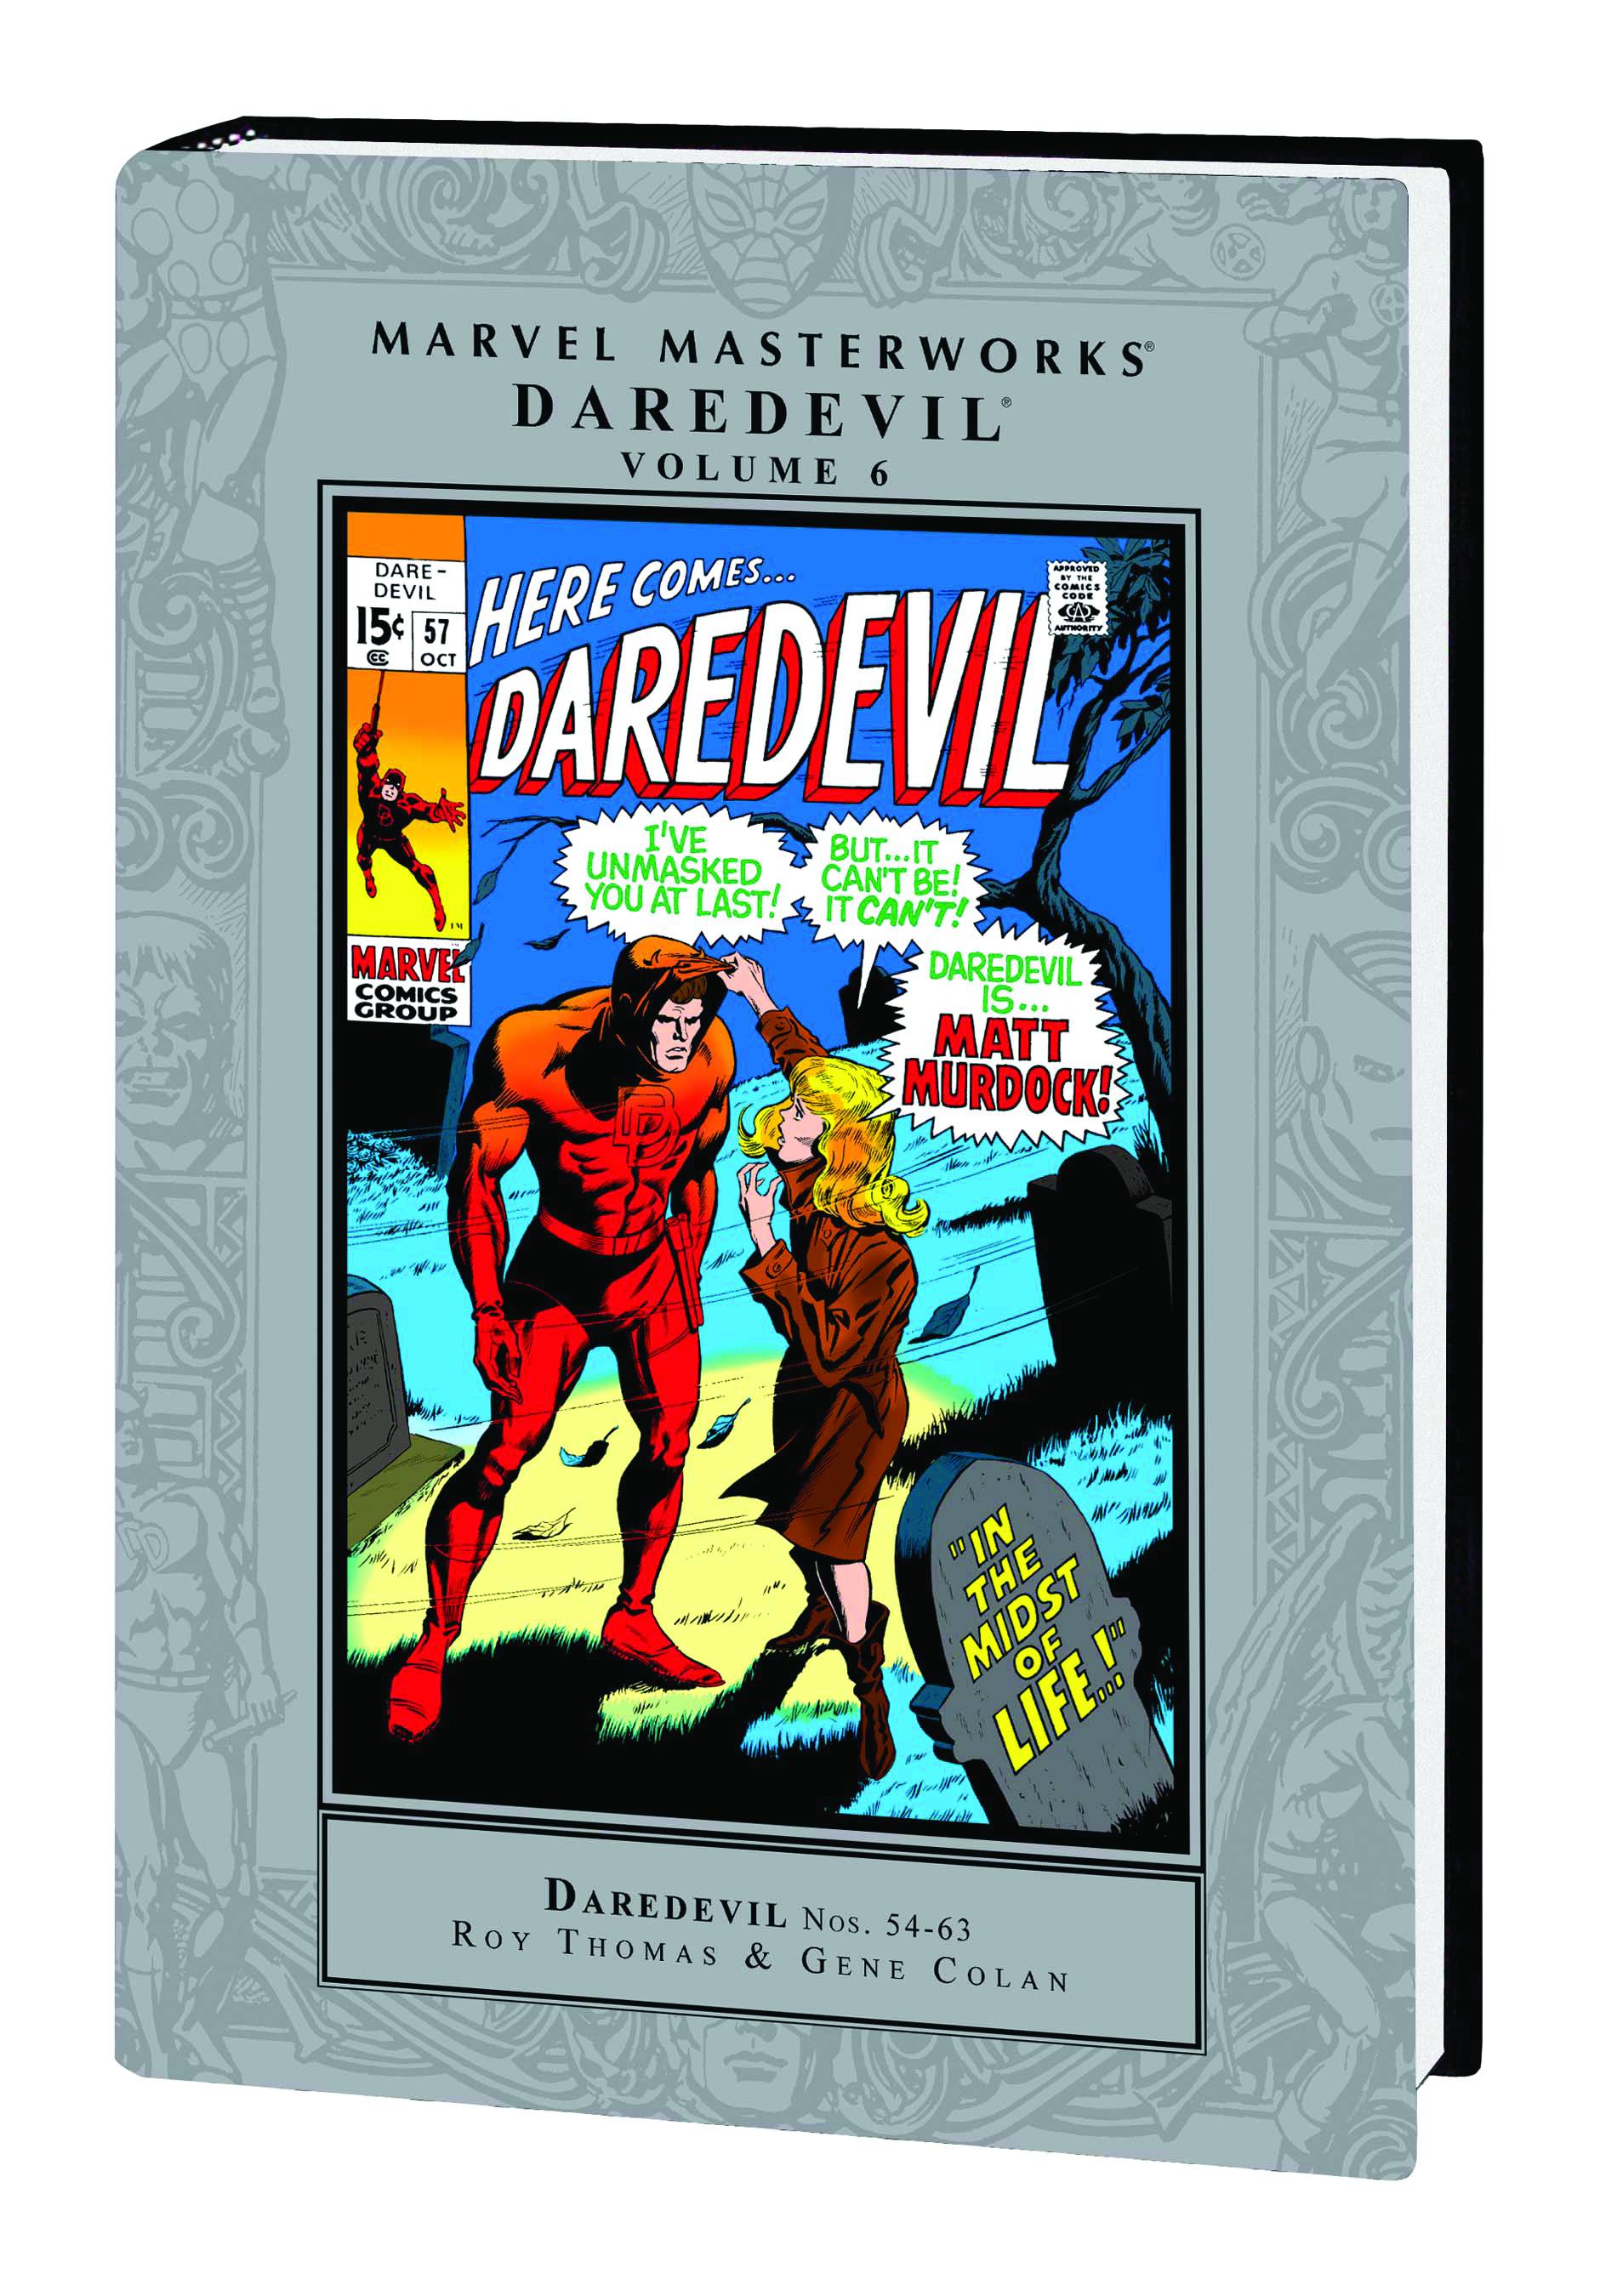 Marvel Masterworks Daredevil Hardcover Volume 6 Hardcover